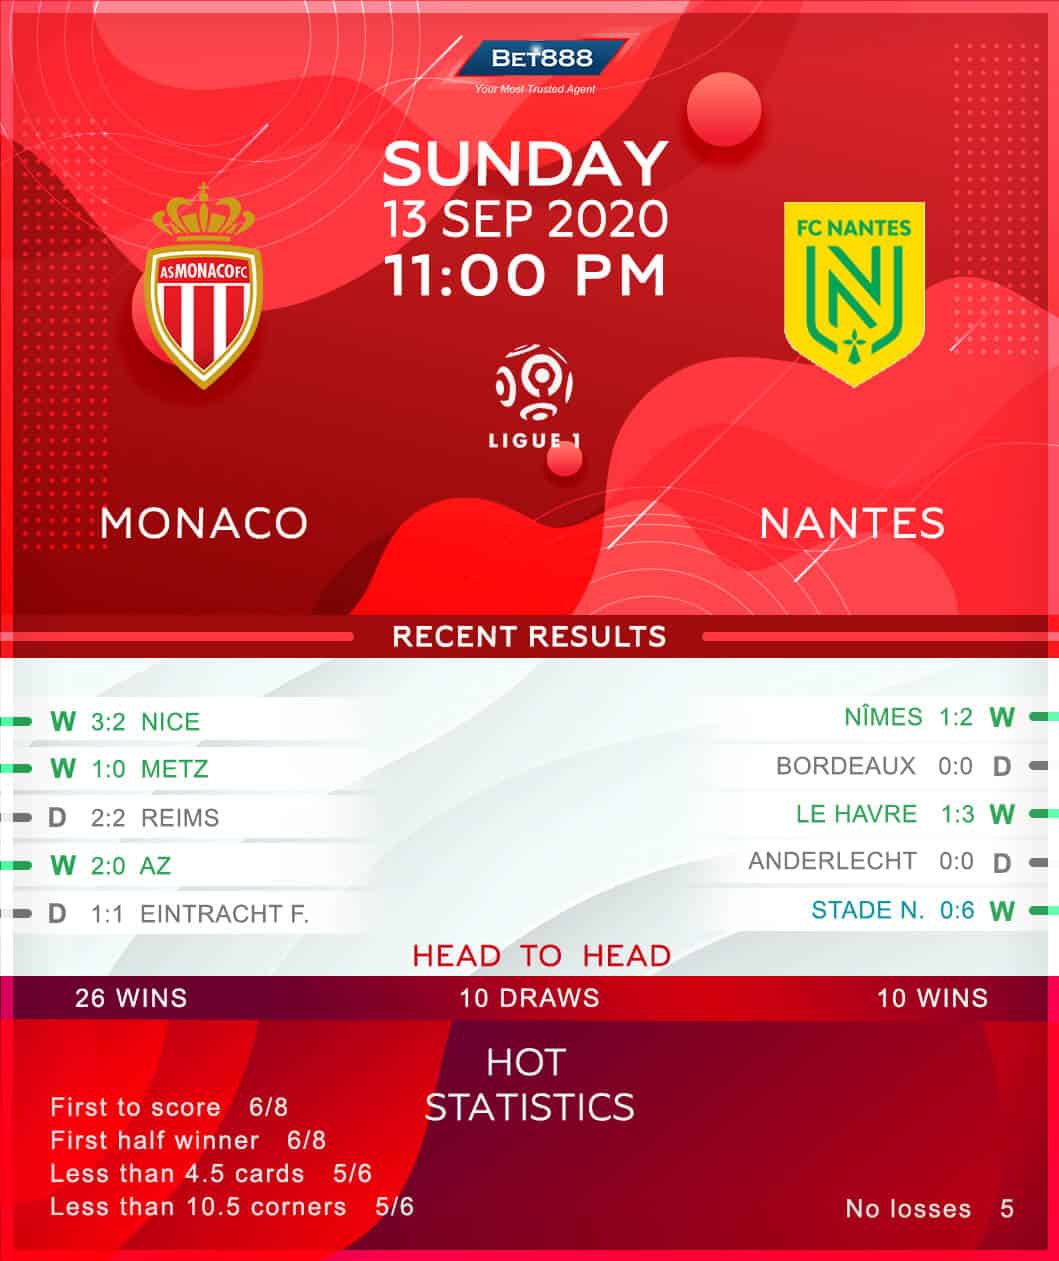 Monaco vs Nantes 13/09/20